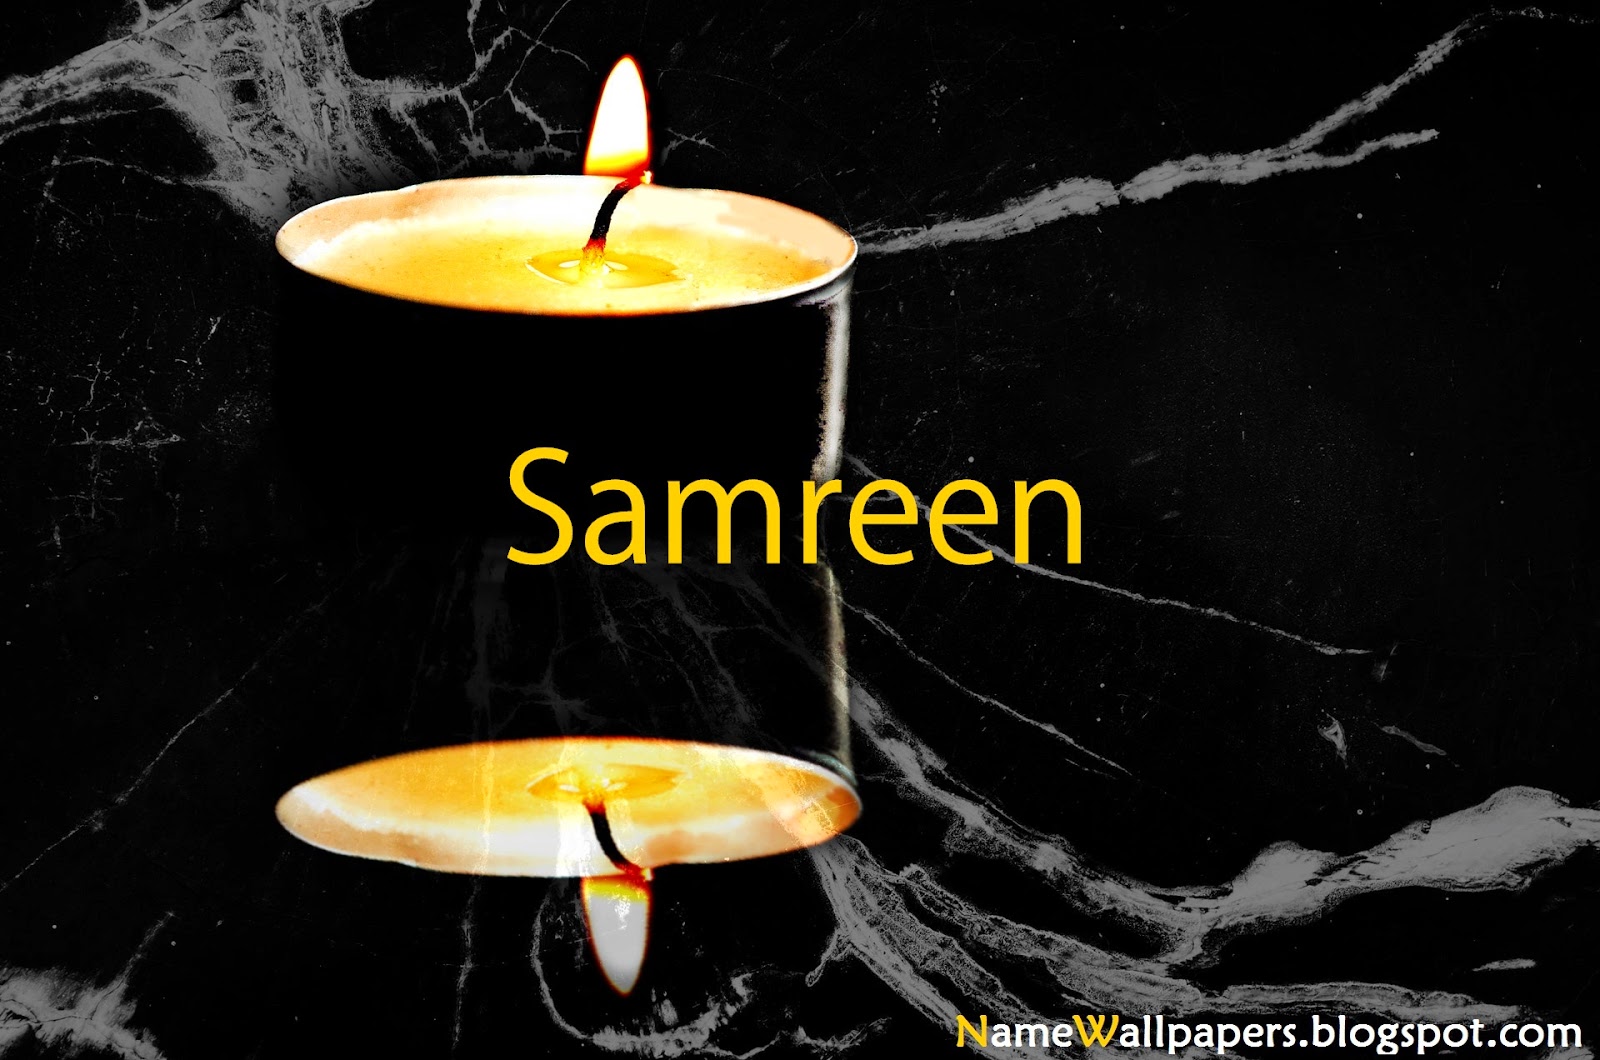 samreen name wallpaper,kerze,beleuchtung,stillleben fotografie,gelb,flamme